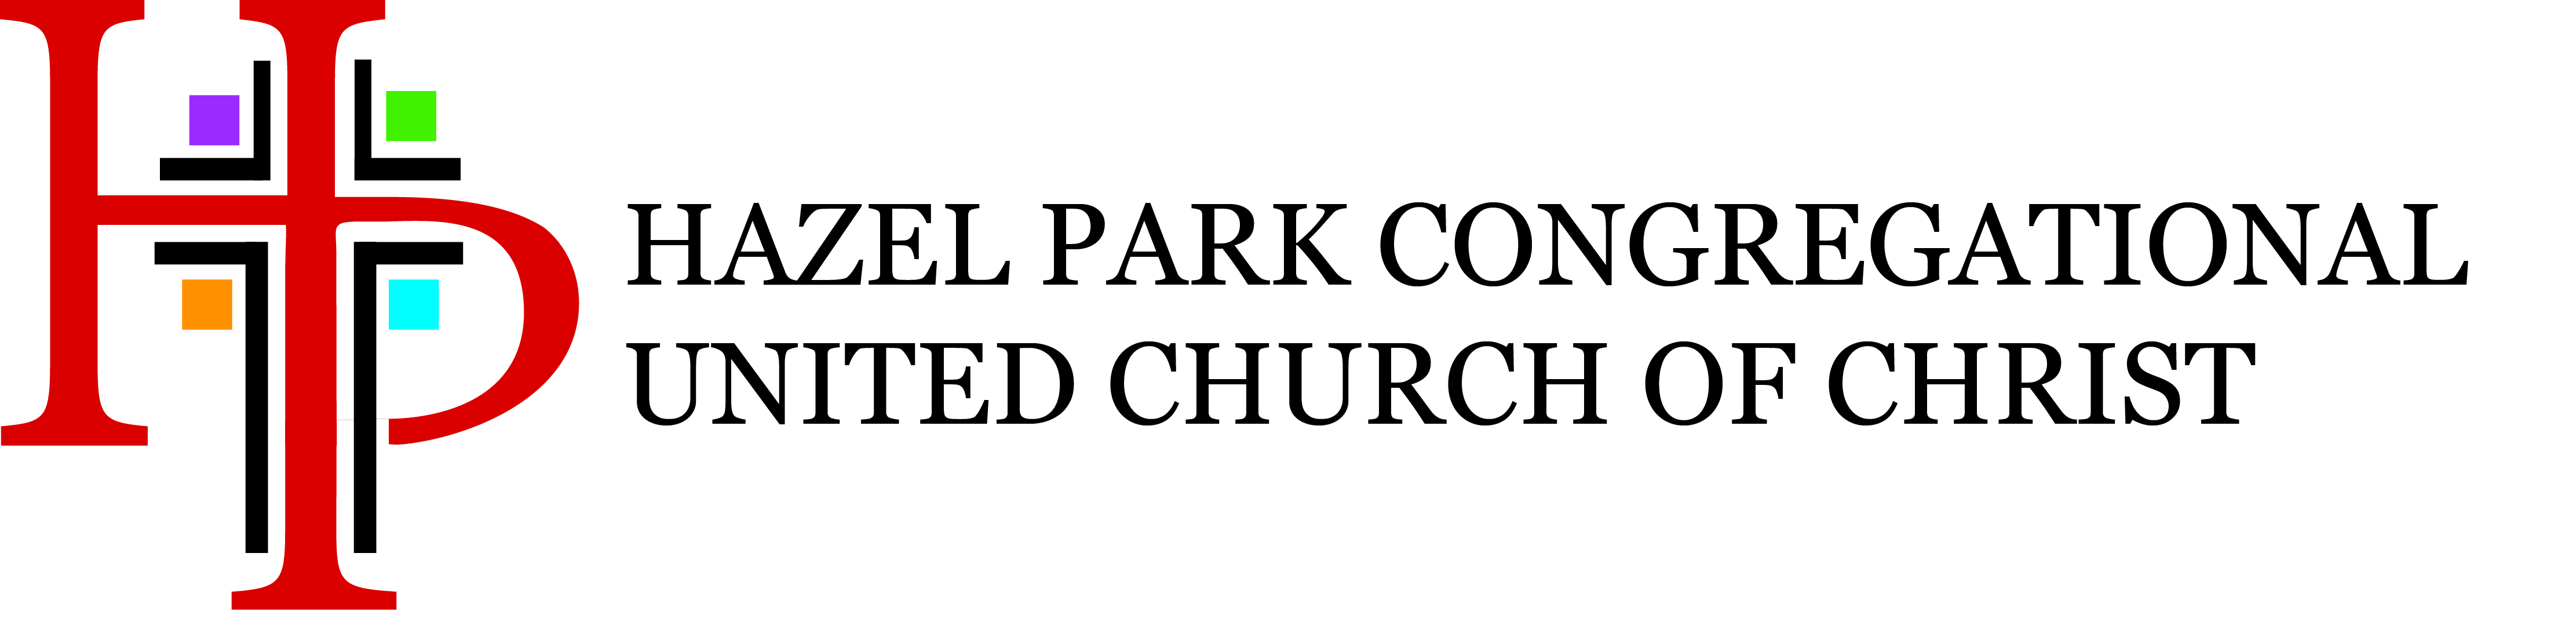 Hazel Park Congregational United Church of Christ Slide Image